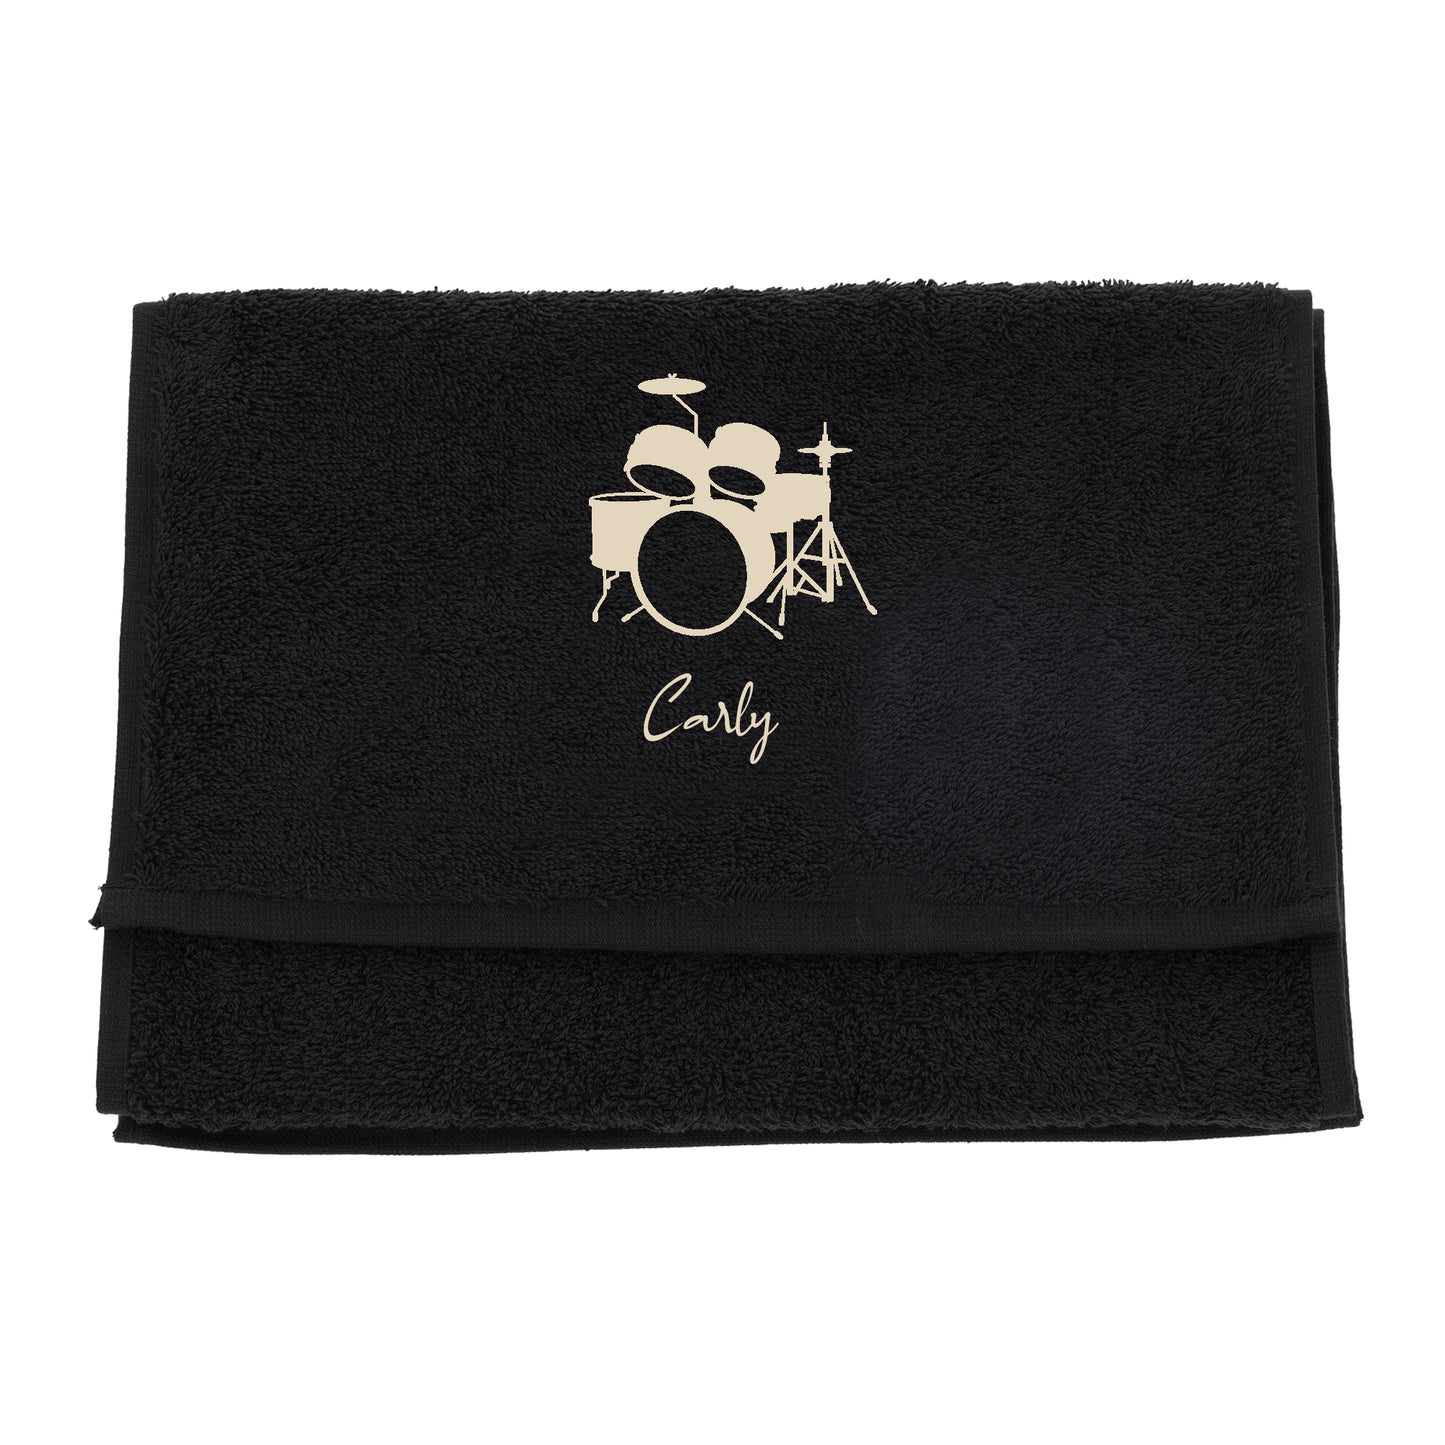 Personalised Embroidered Drummer Towel  - Always Looking Good -   